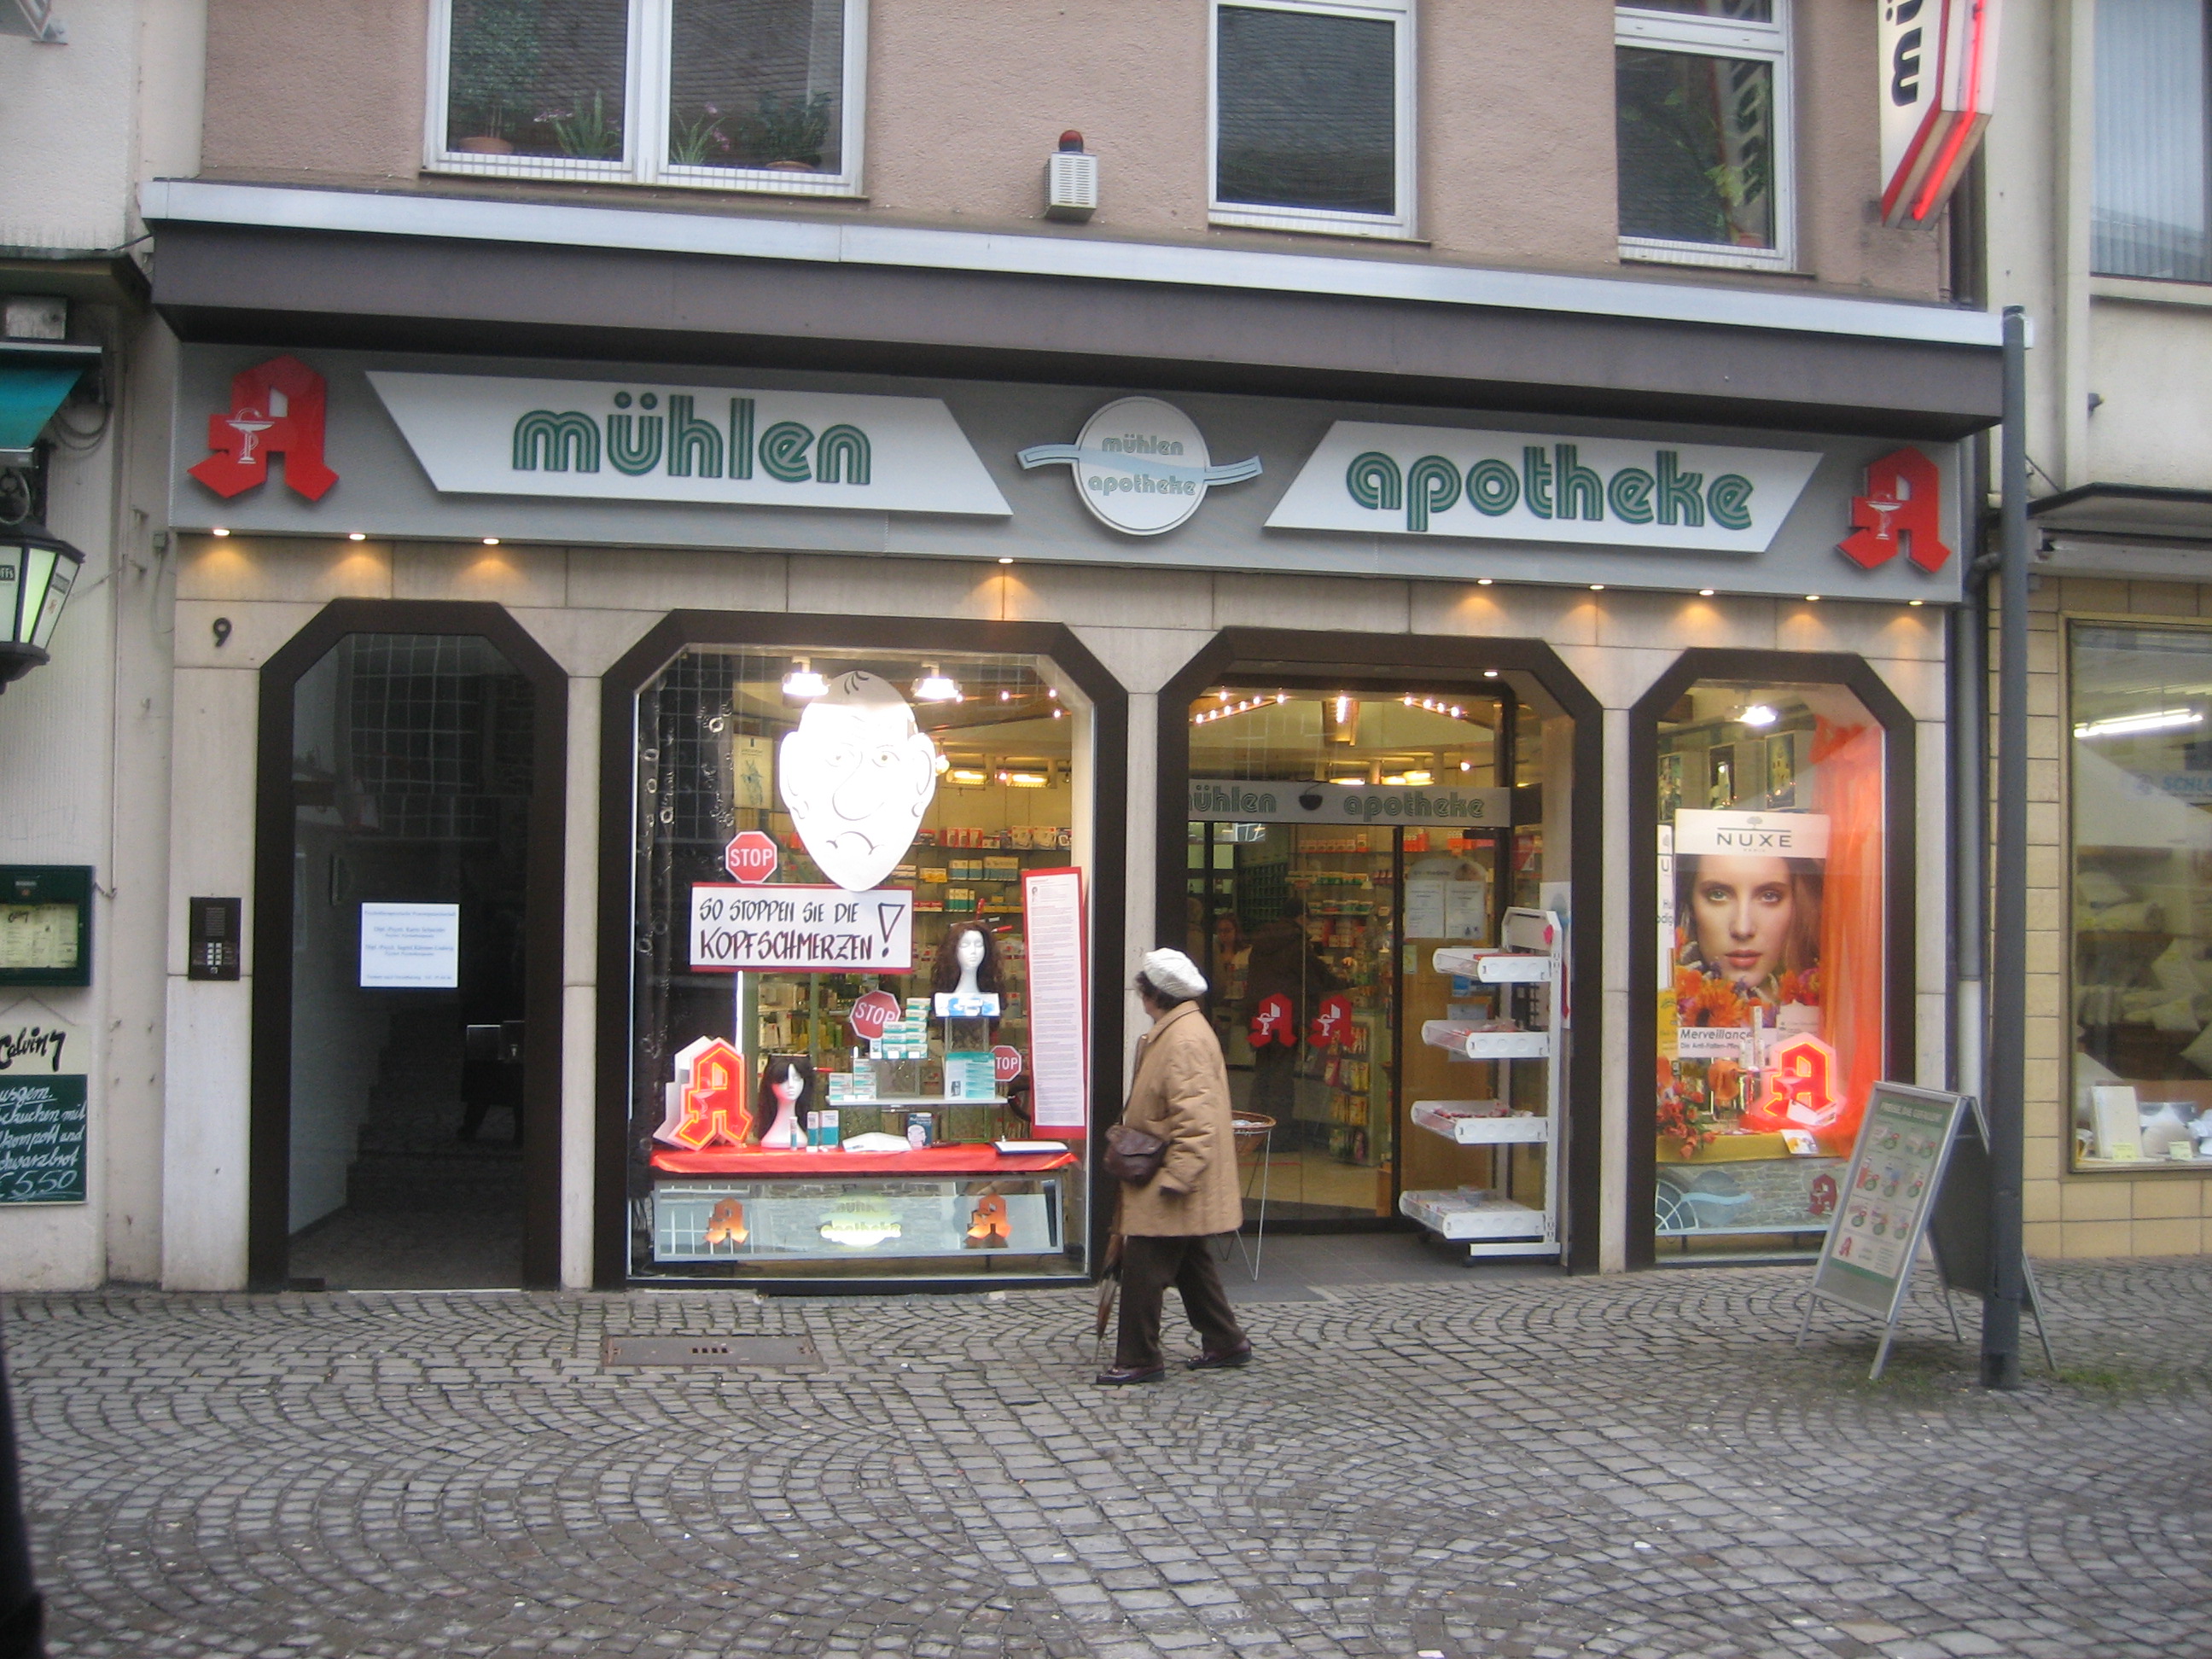 Bild 1 Mühlen Apotheke in Wuppertal